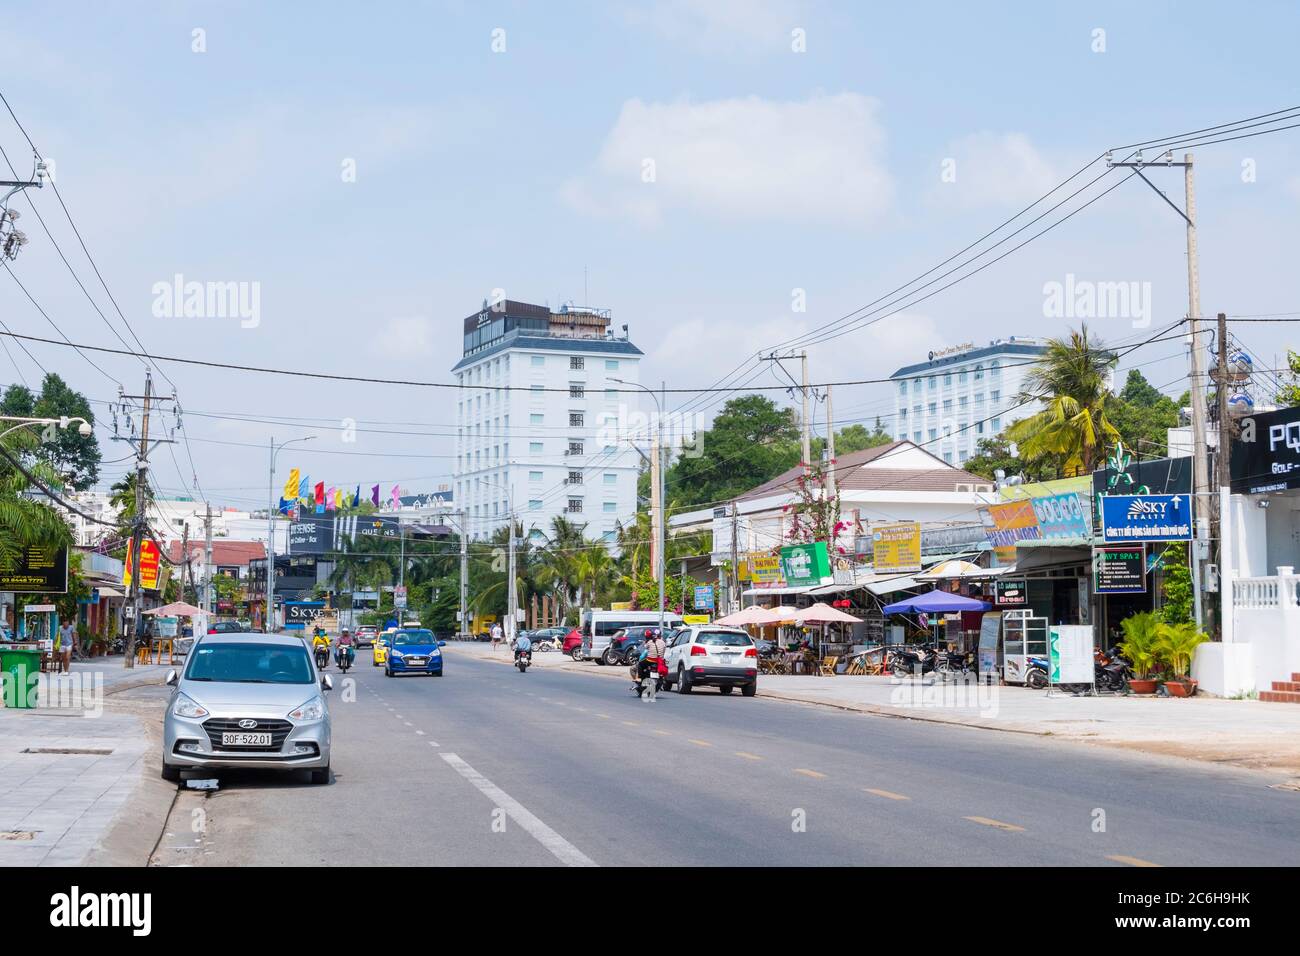 Duong Tran Hung Dao, main street, at Long Beach, Duong Dong, Phu Quoc island, Vietnam, Asia Stock Photo